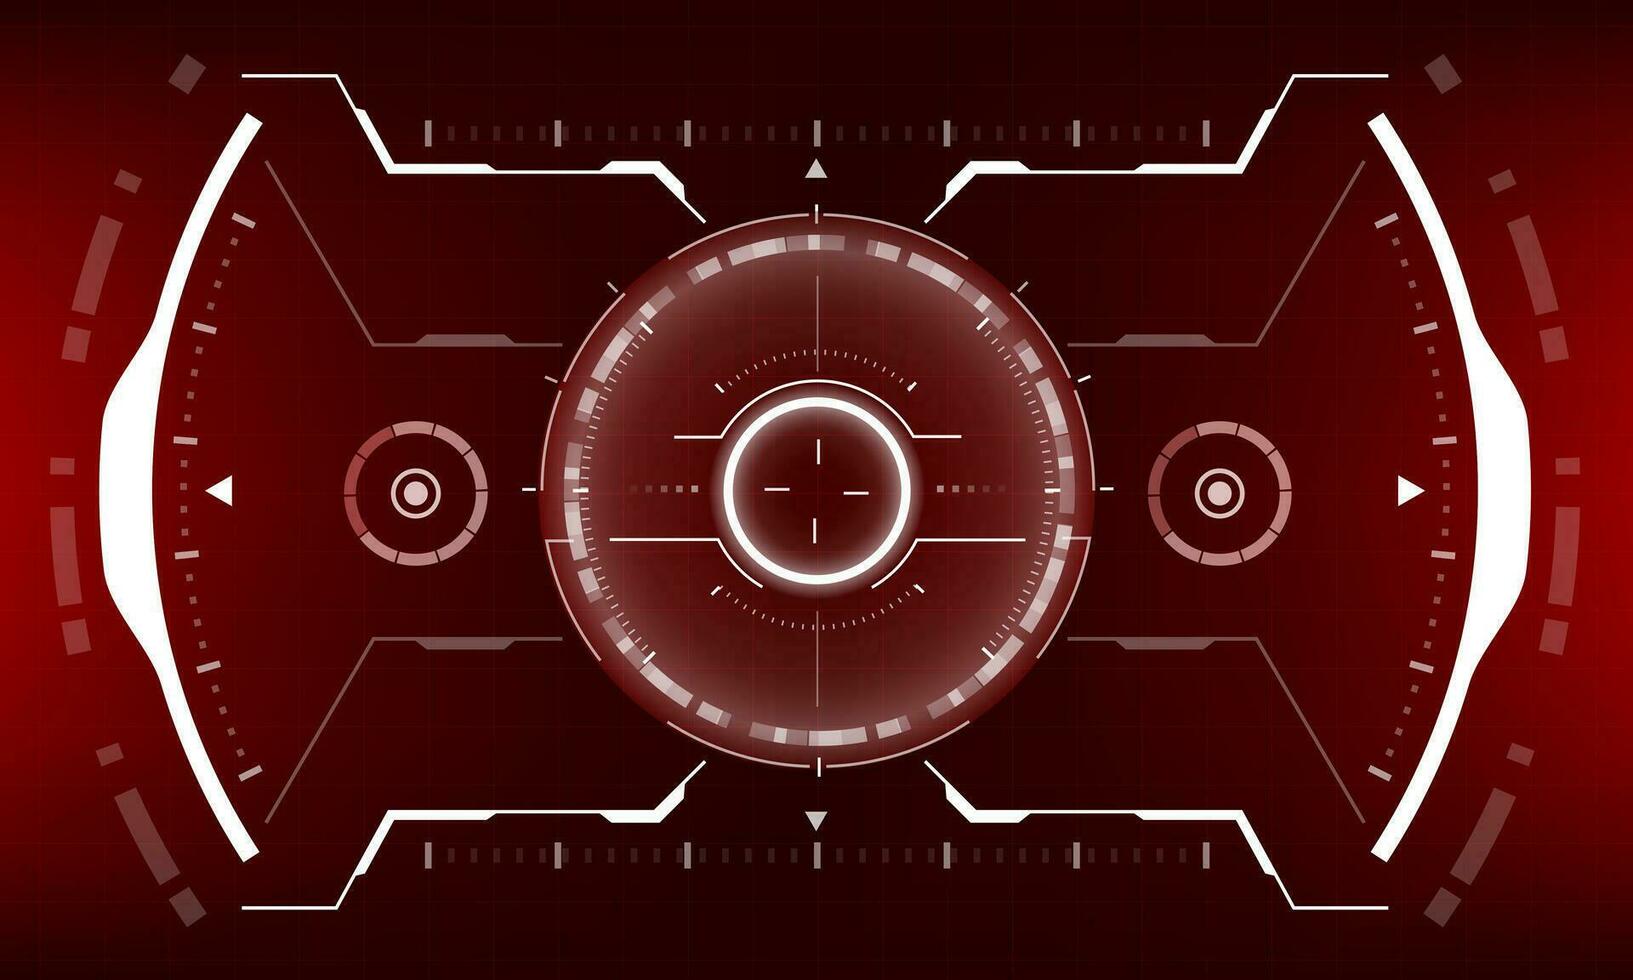 hud science-fiction interface écran vue blanc géométrique sur rouge conception virtuel réalité futuriste La technologie Créatif afficher vecteur